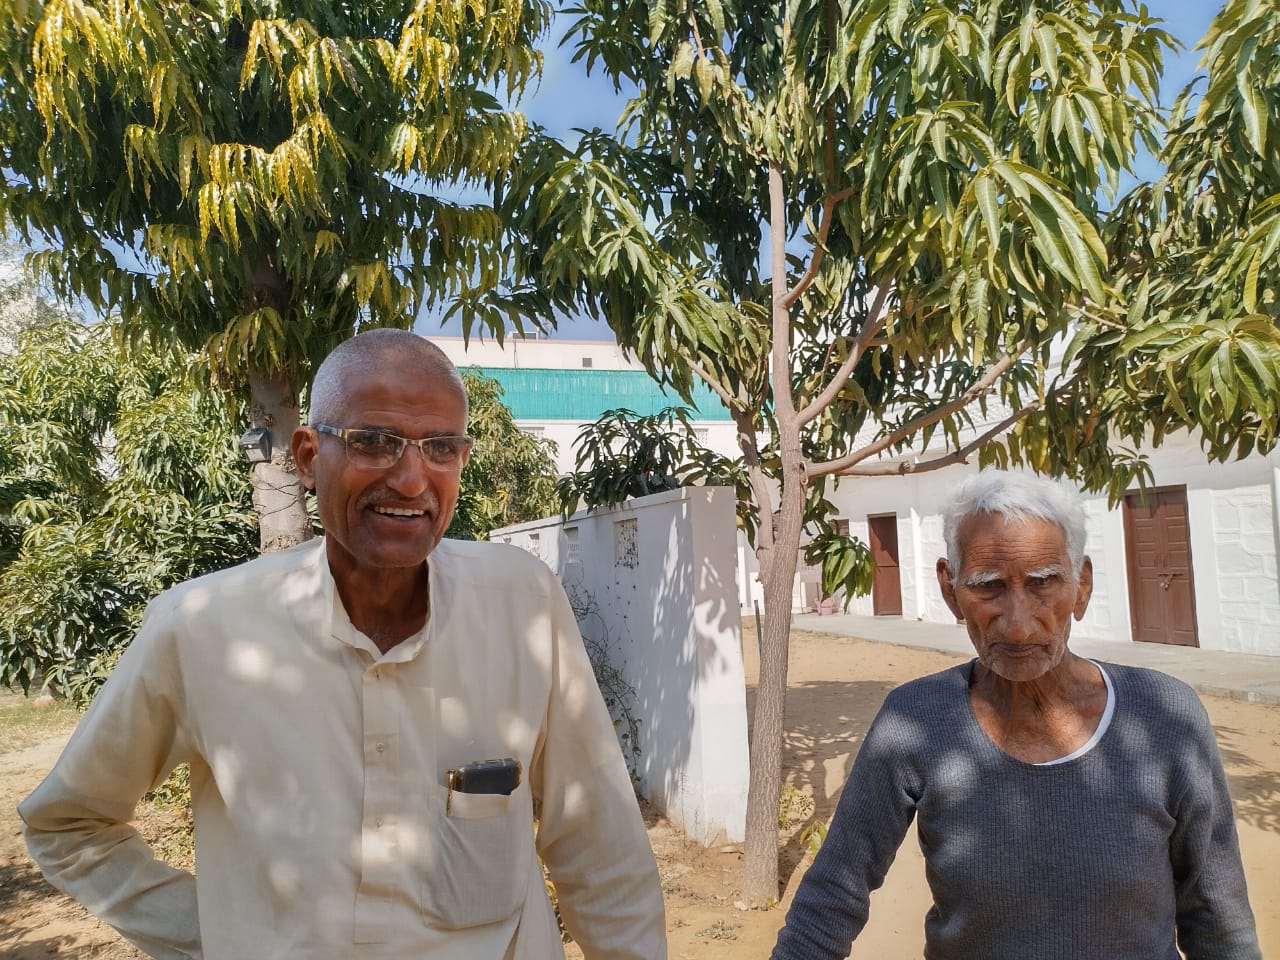 98 वर्षीय पूर्व विधायक व किसान नेता चौधरी रड़मल सिंह पाकिस्तान जाकर जाट मुस्लिमों से मिलकर देना चाहते हैं भाईचारे का संदेश | New India Times